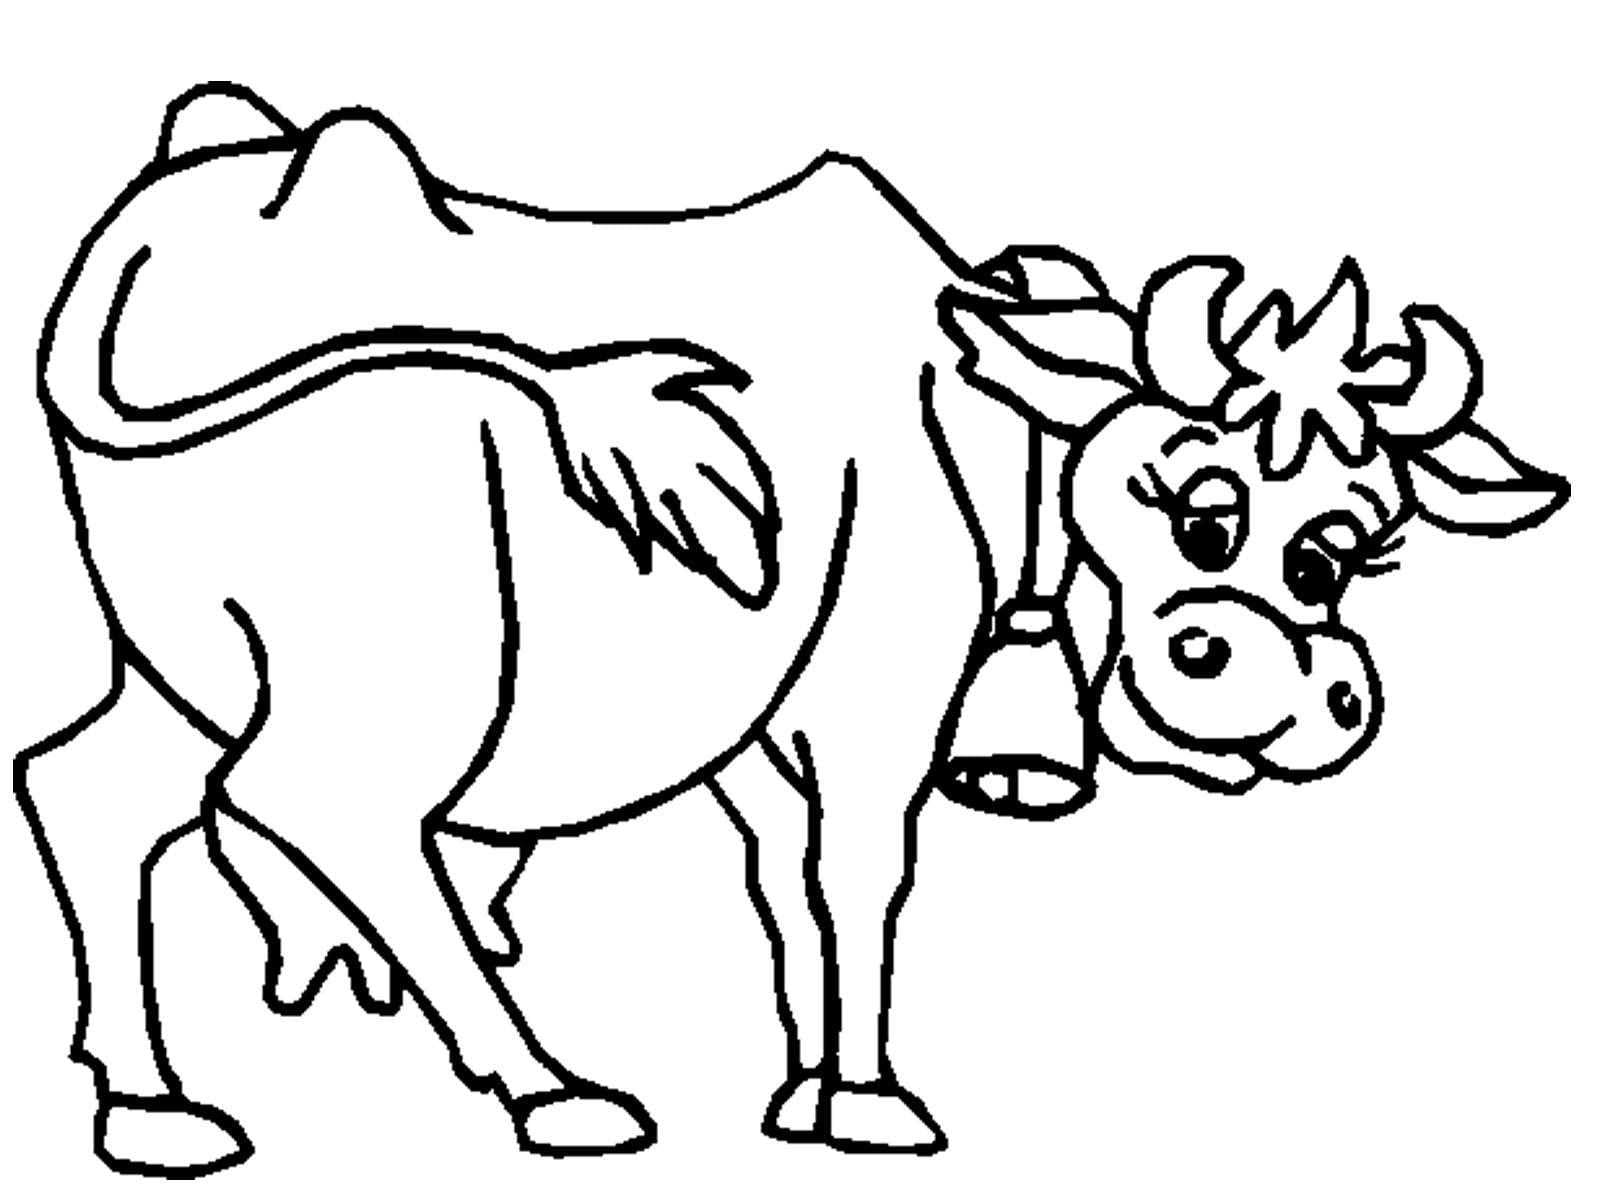 Раскраски Корова - Распечатывайте бесплатно